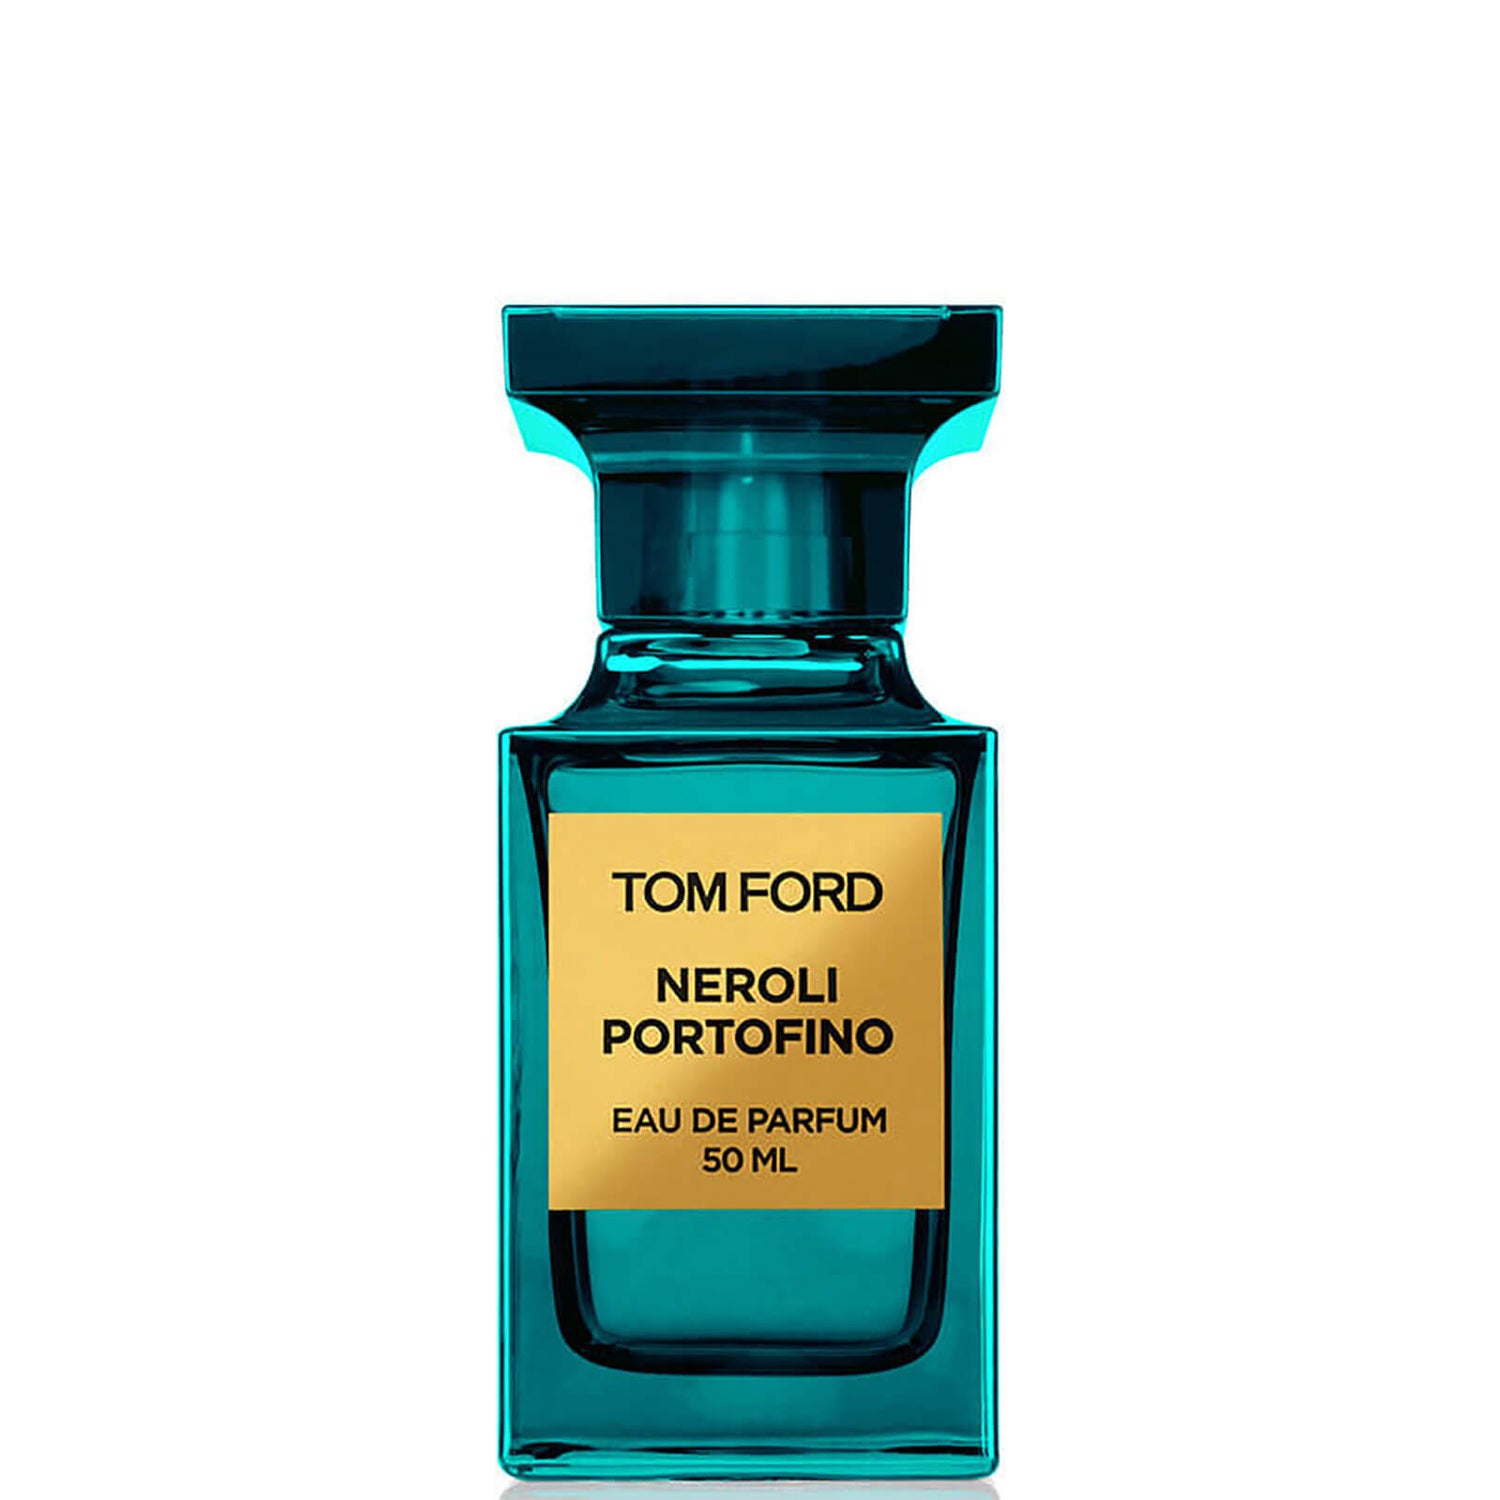 Tom Ford Neroli Portofino Eau de Parfum Spray - 50 ml